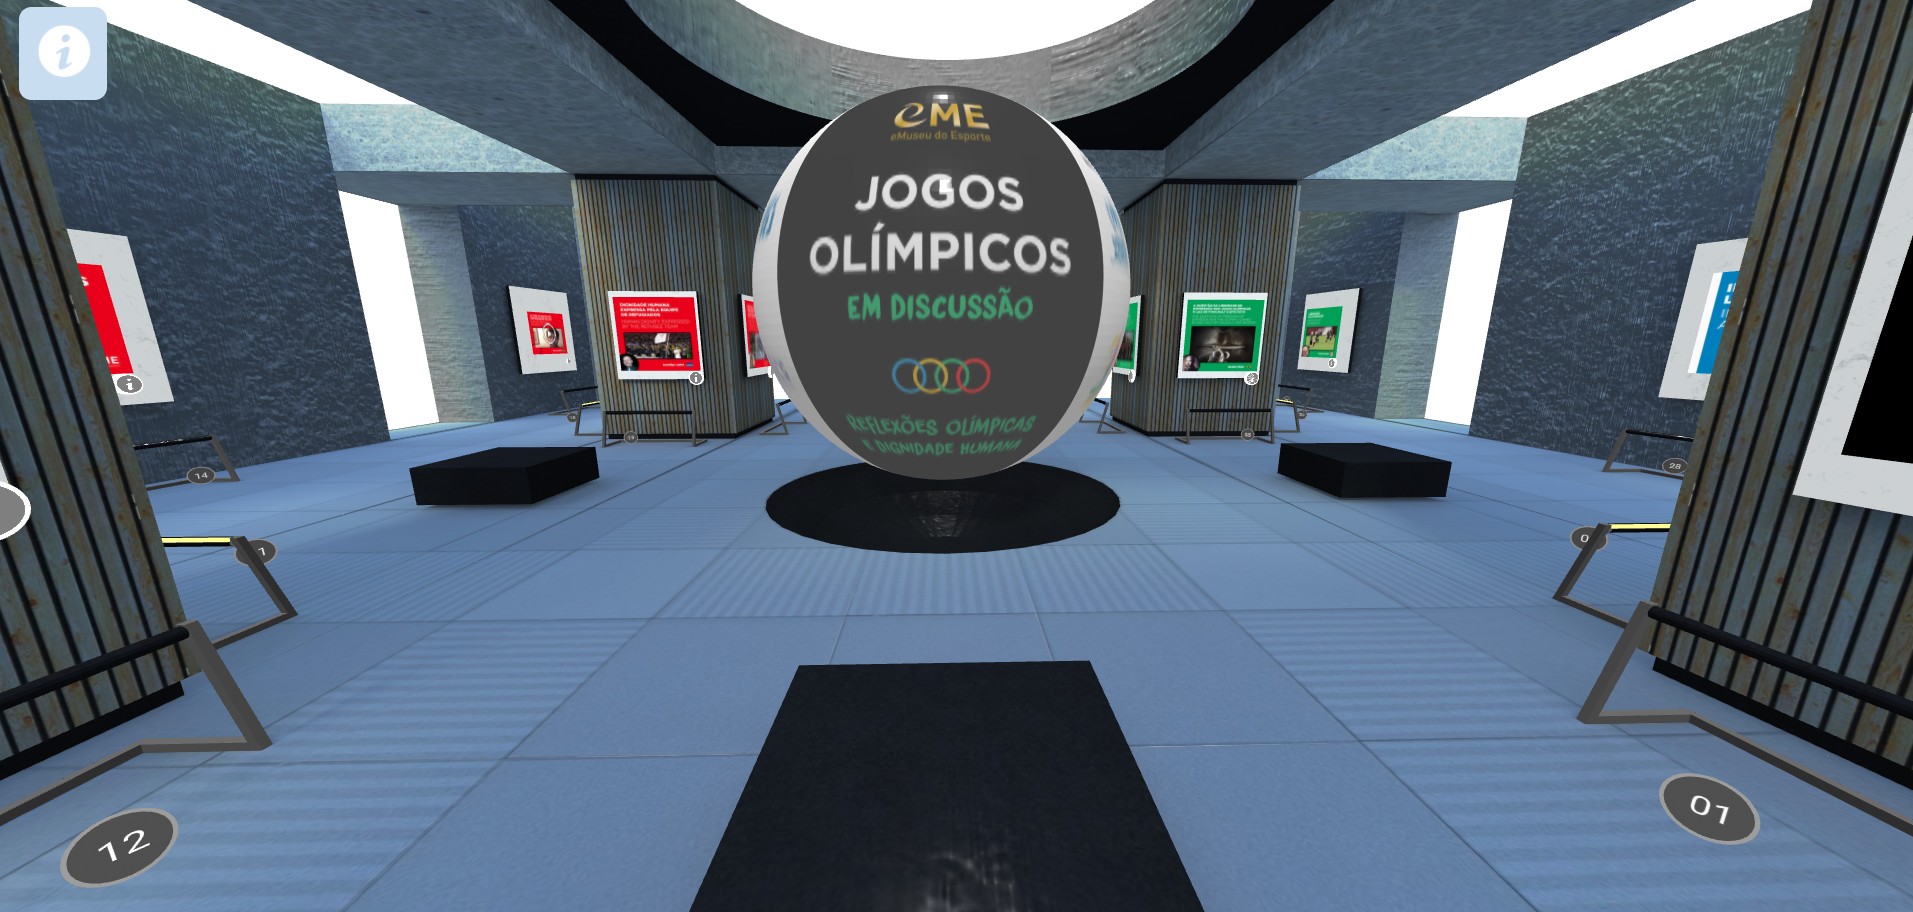 Exposição virtual estimula debate sobre pautas sociais nas Olimpíadas (Foto: Reprodução/eMuseu do Esporte)